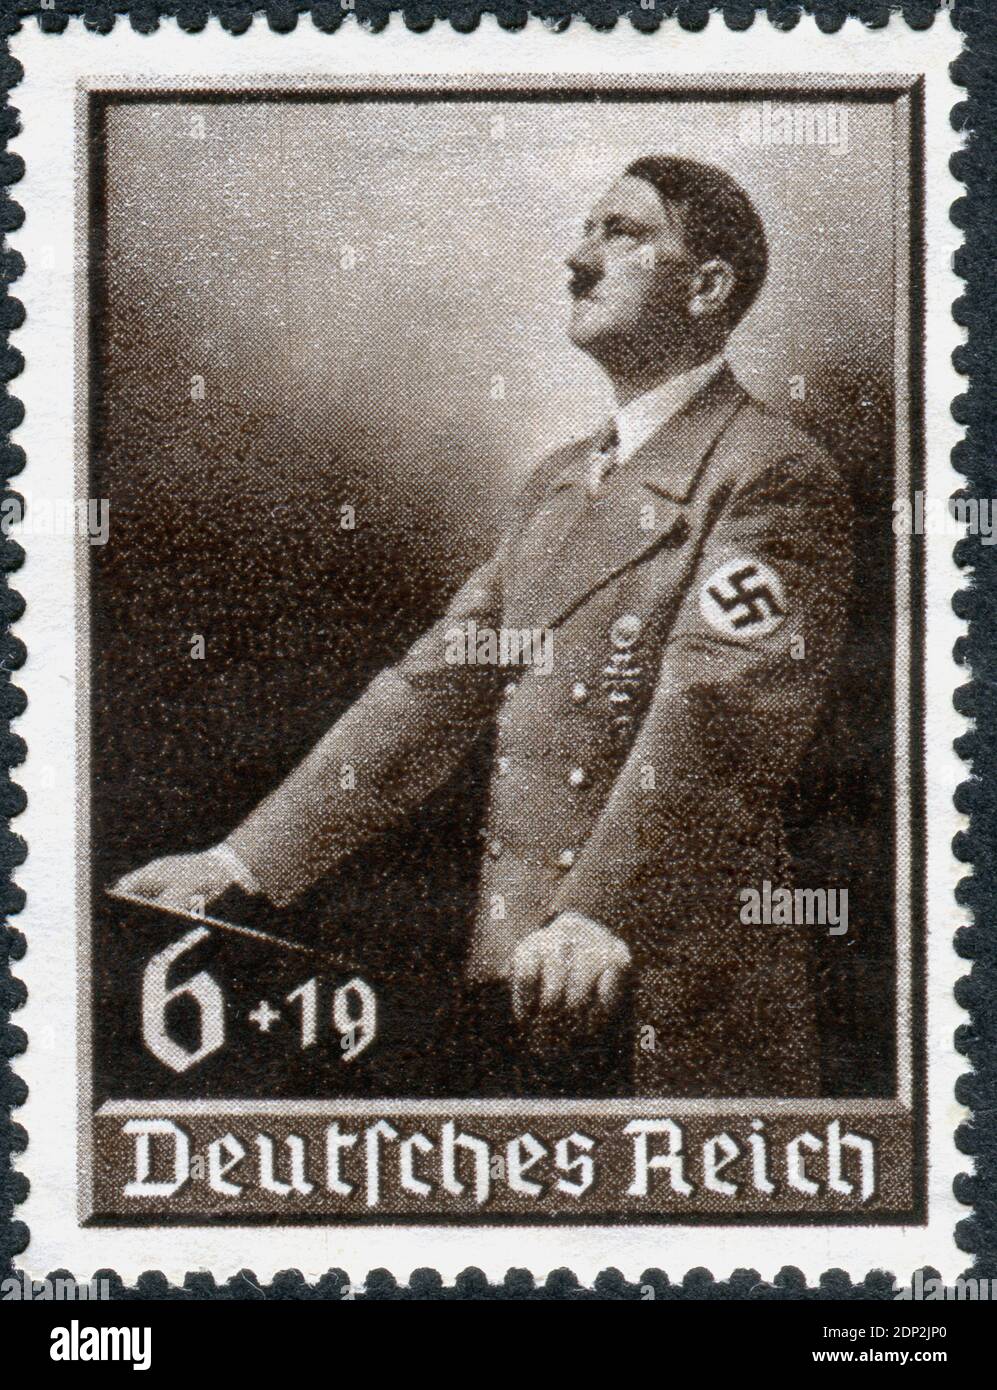 ALLEMAGNE - VERS 1939: Timbre-poste imprimé en Allemagne, montre Adolf Hitler pour le lectern. Adolf Hitler - politicien allemand, dirigeant (Fuehrer) d'Allemagne et du Parti nazi, vers 1939 Banque D'Images